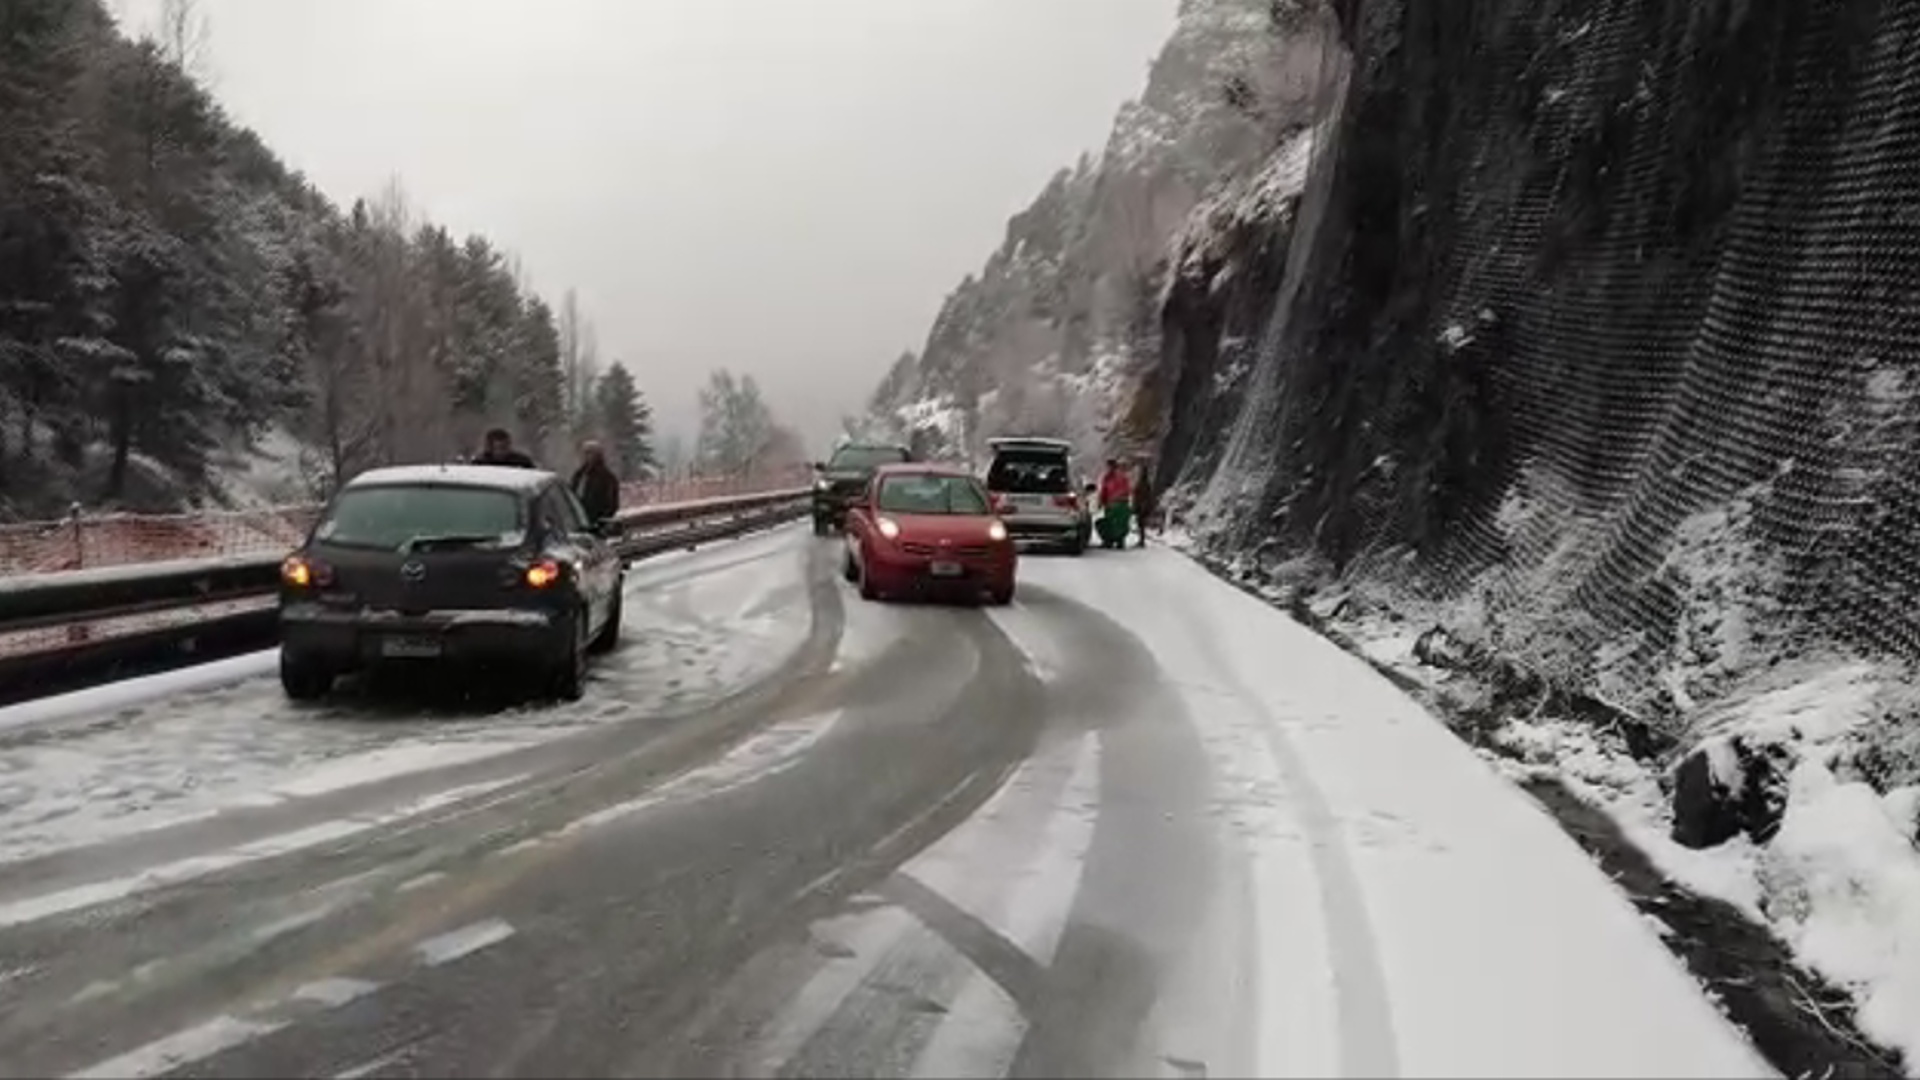 La neu i el gel compliquen la circulació a la carretera de Canillo 